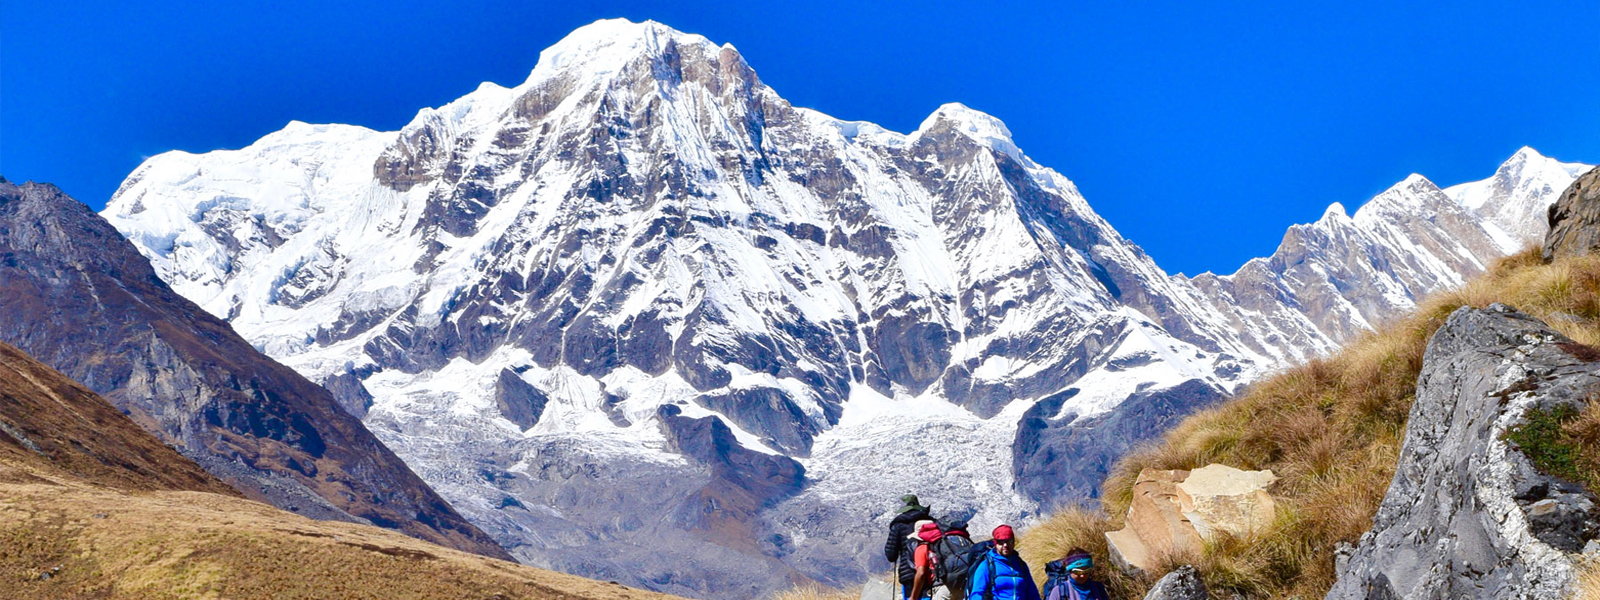 Annapurna Sanctuary Trek - 14 Days